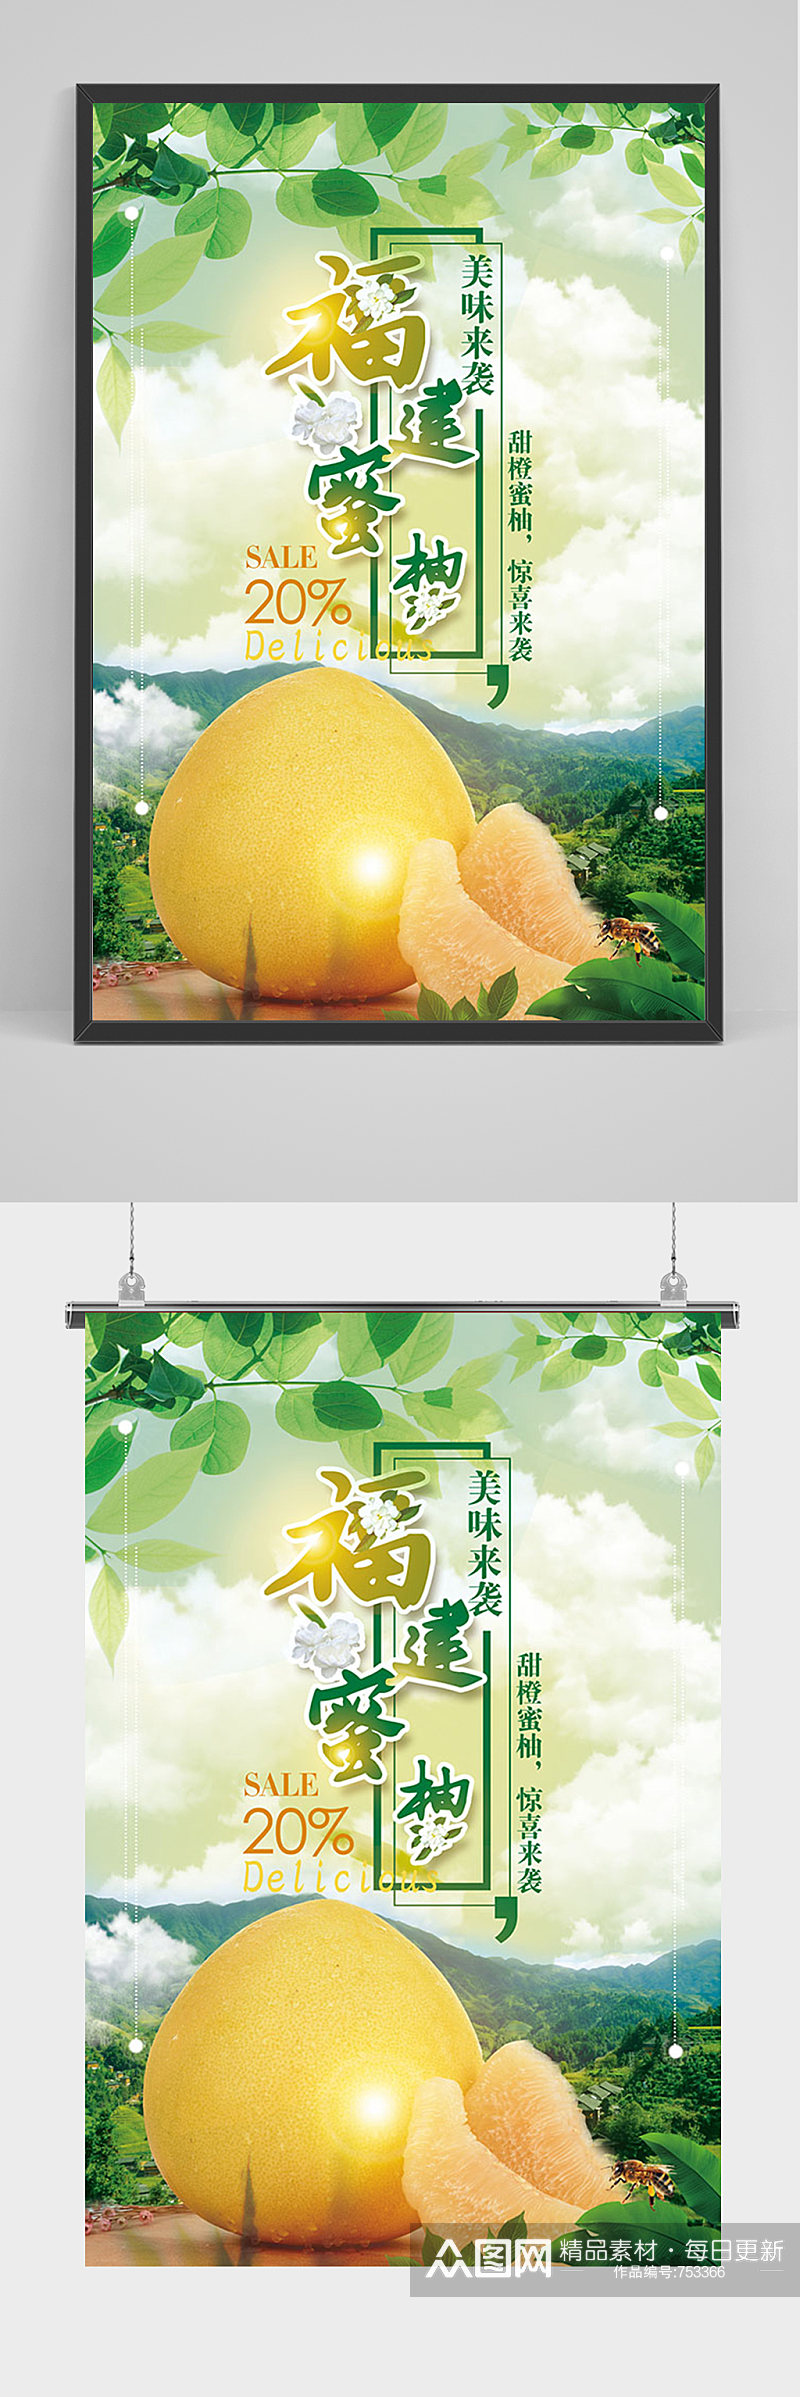 绿色清新福建蜜柚 柚子海报素材